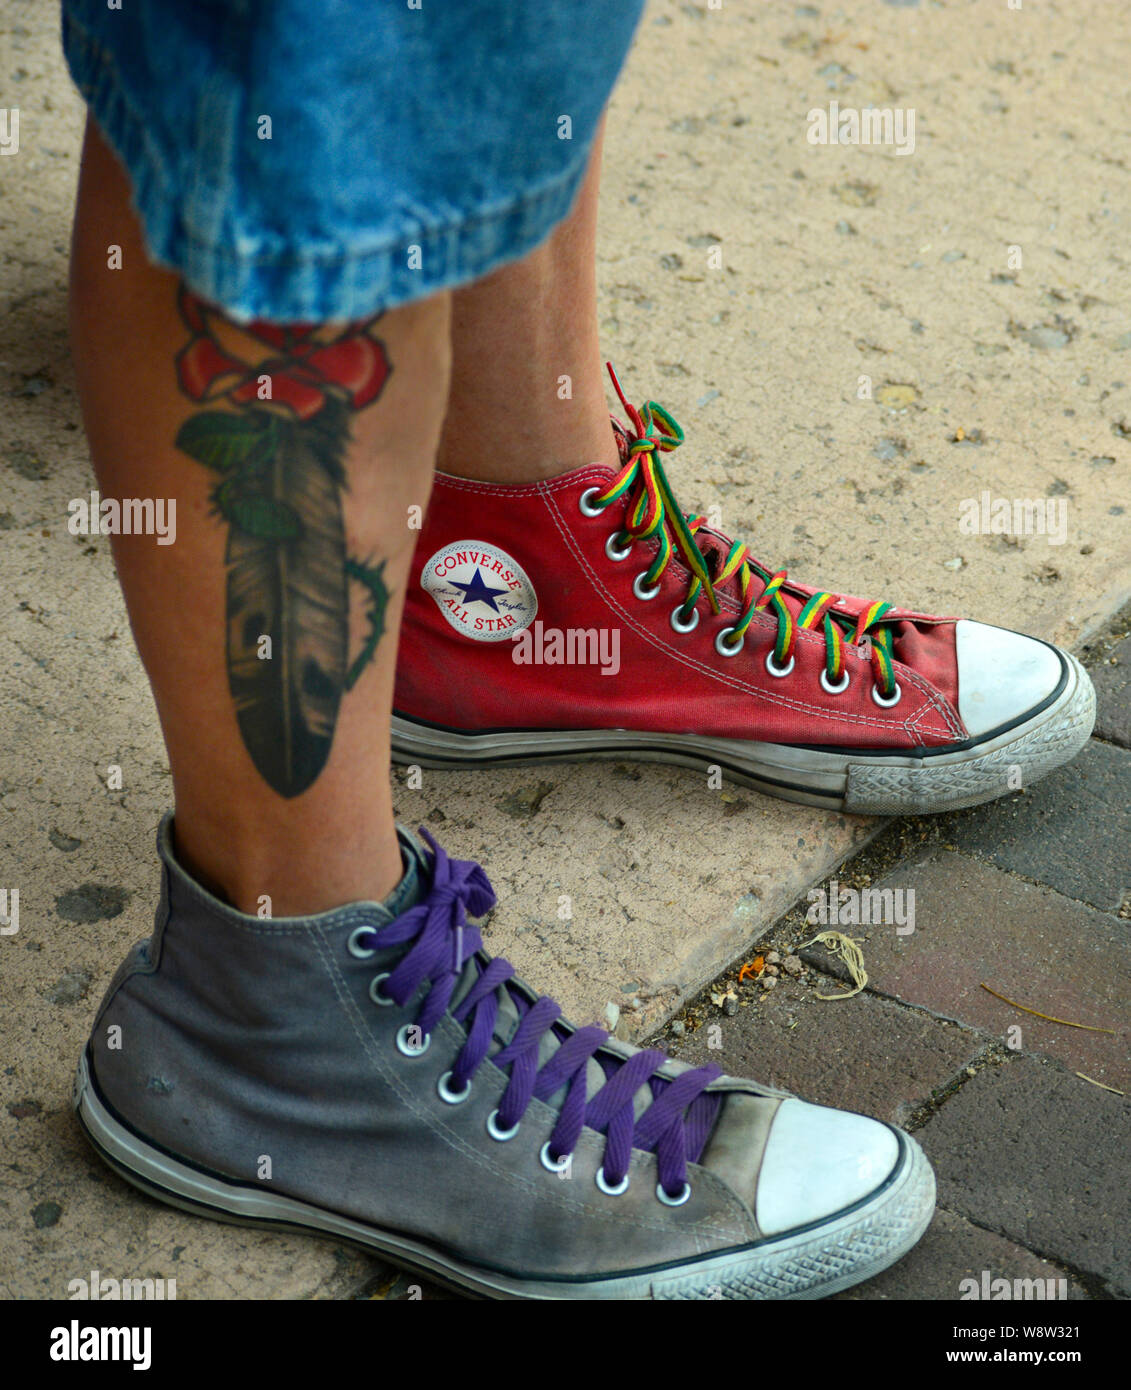 Joven lleva zapatillas de tenis marca Converse no coincidentes Fotografía  de stock - Alamy